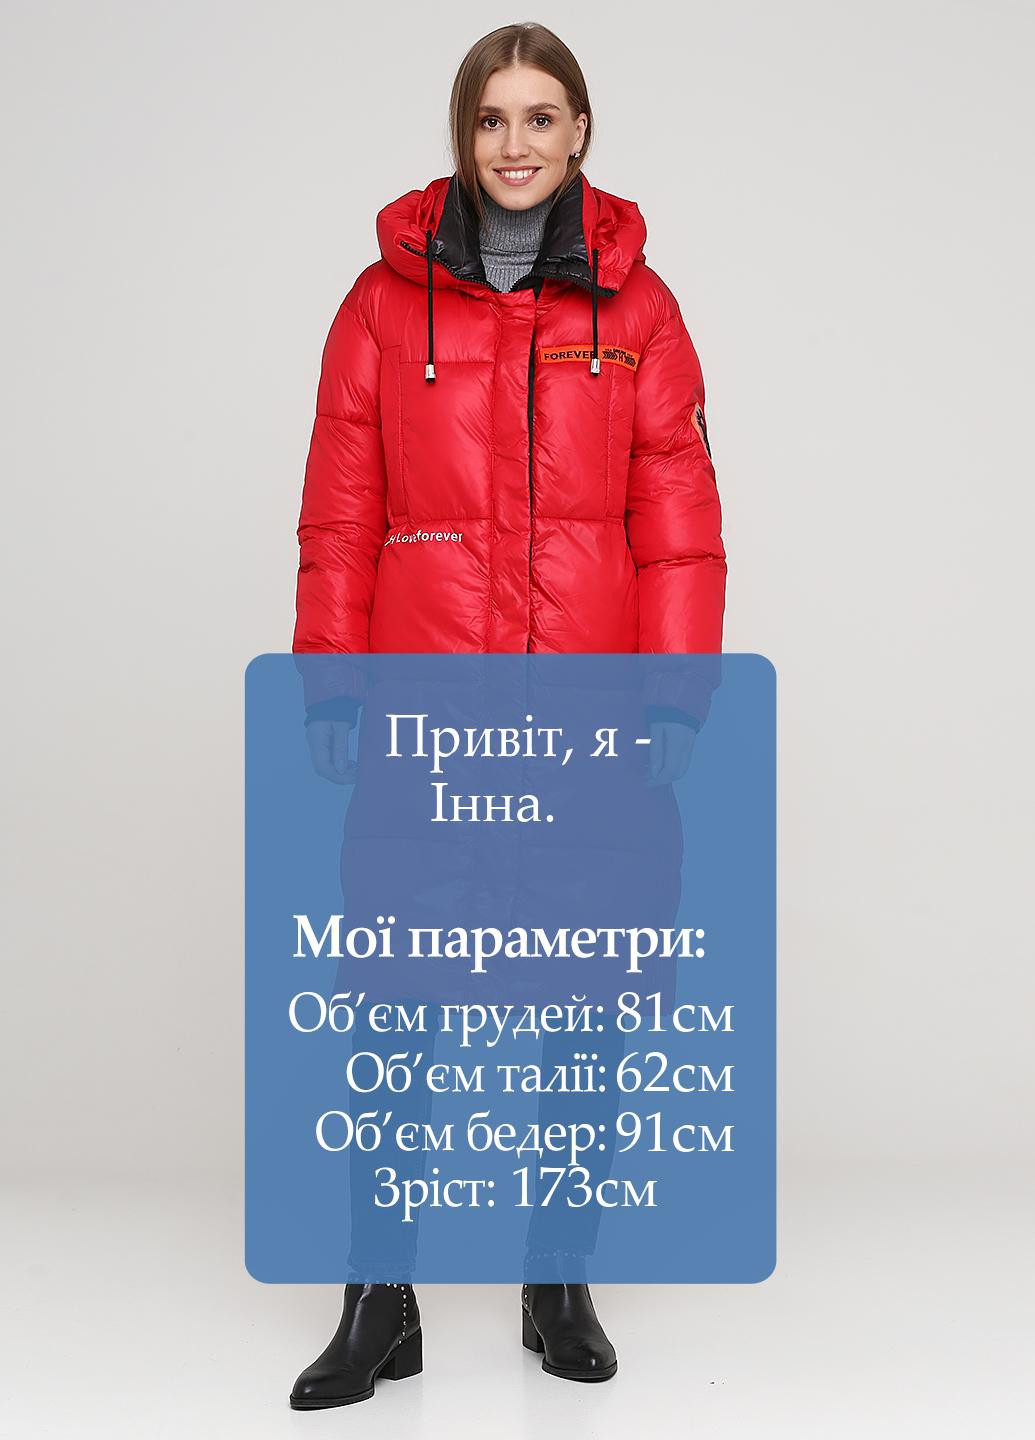 Красная зимняя куртка Xinxinfengge